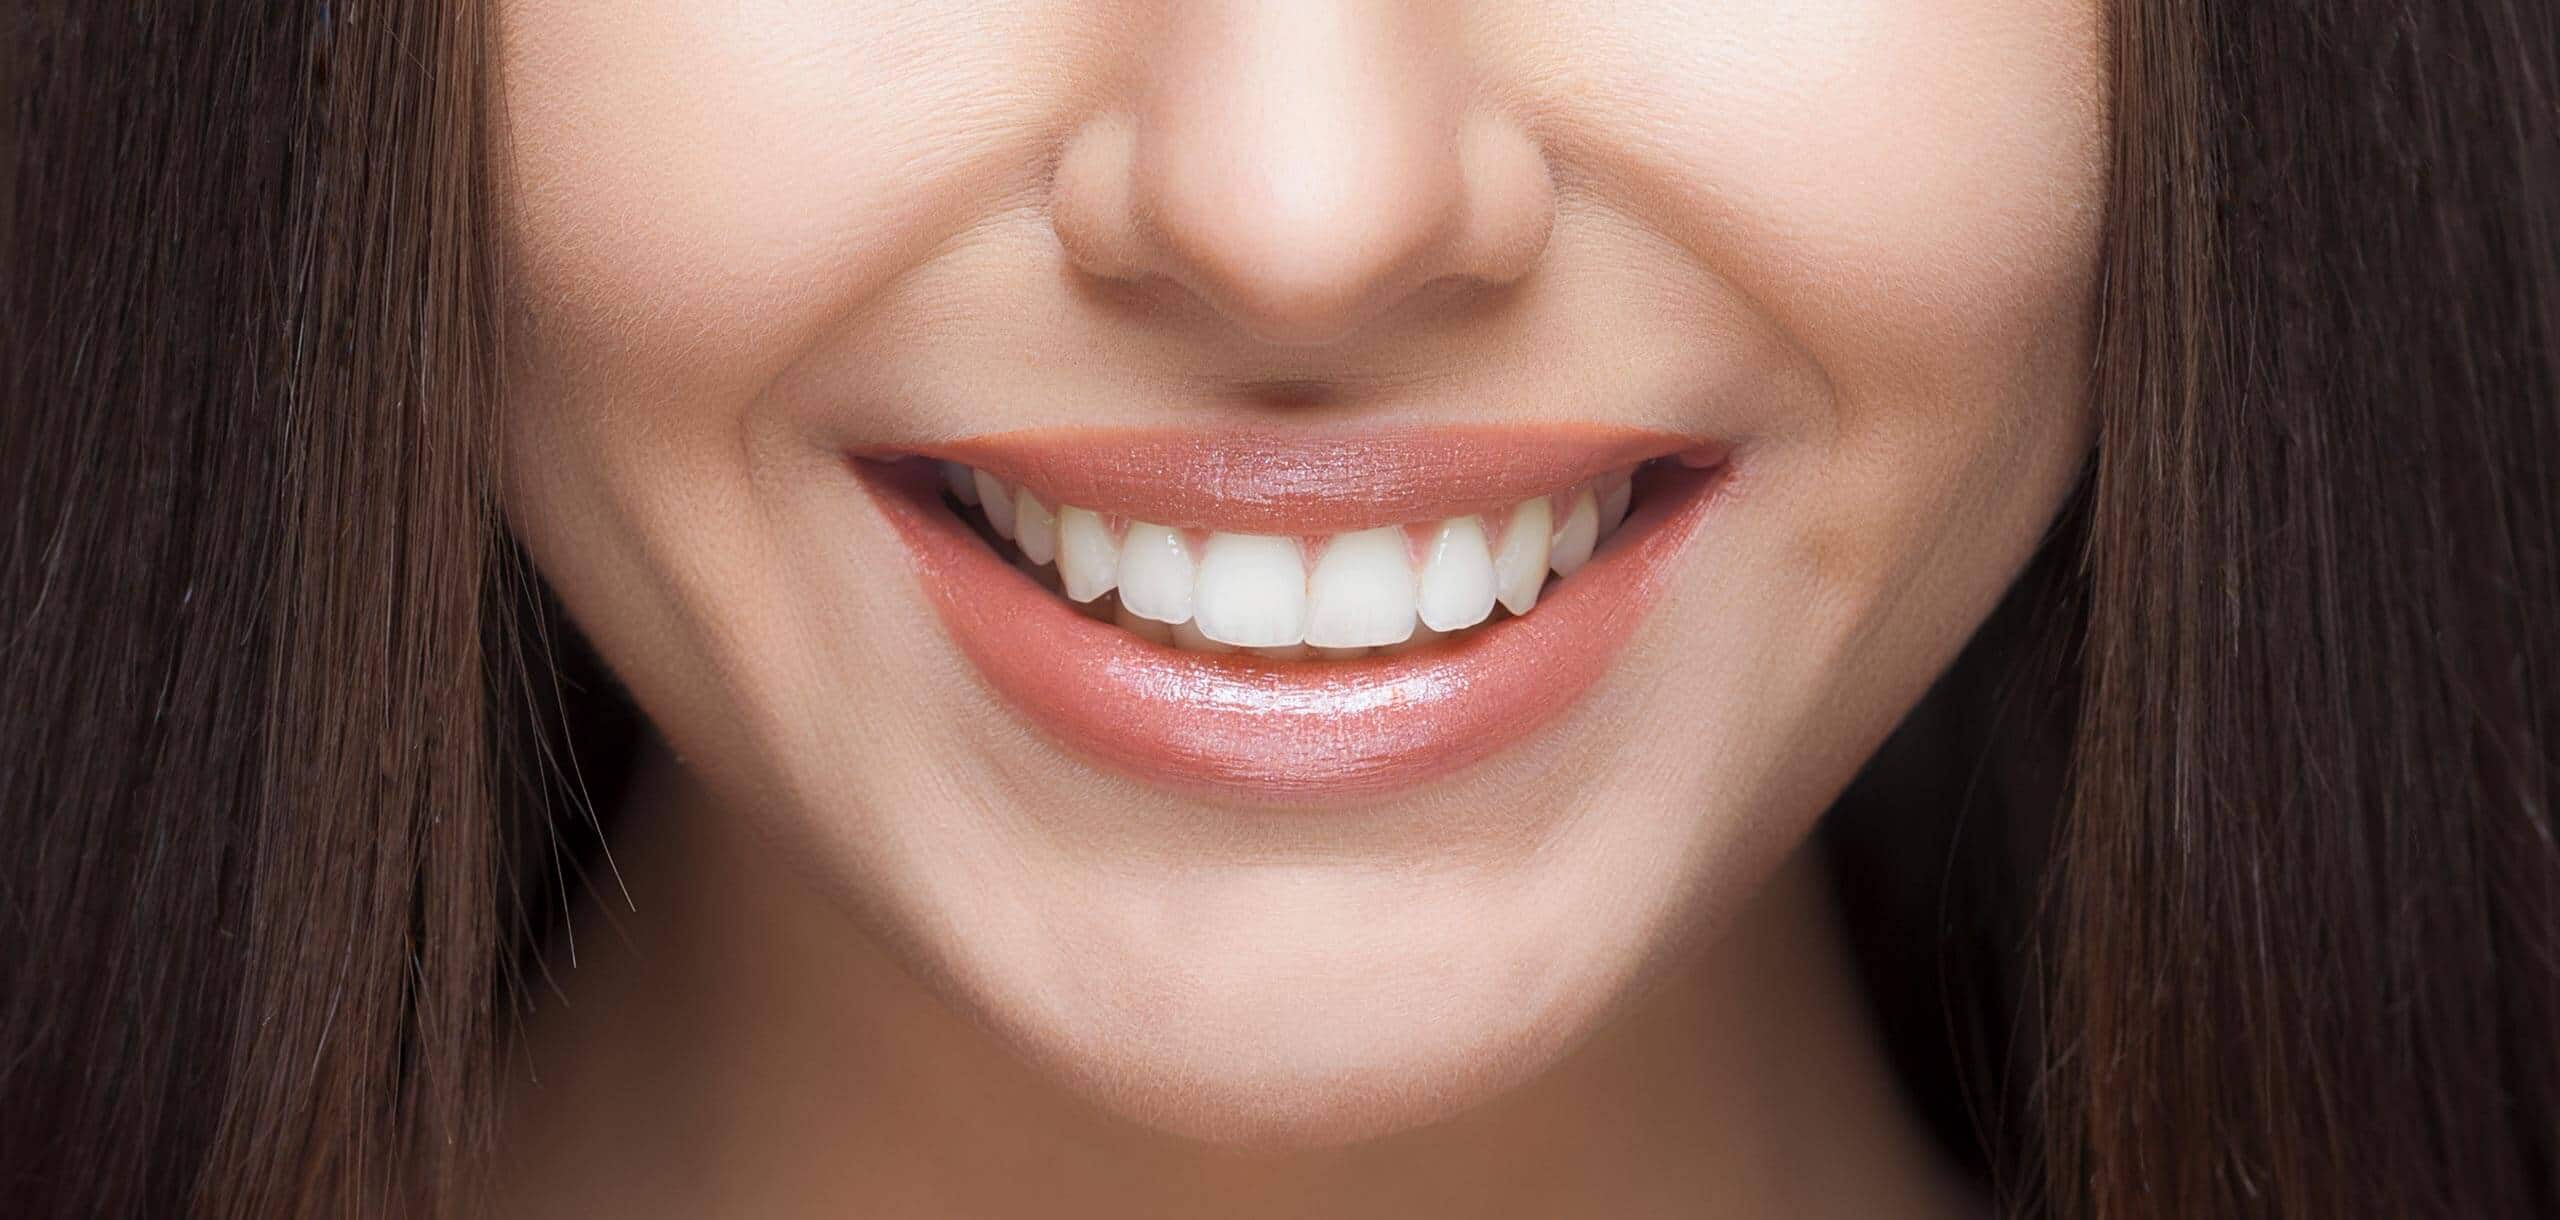 Θα σας «σώσει»: Η σπιτική συνταγή για πιο λευκά δόντια